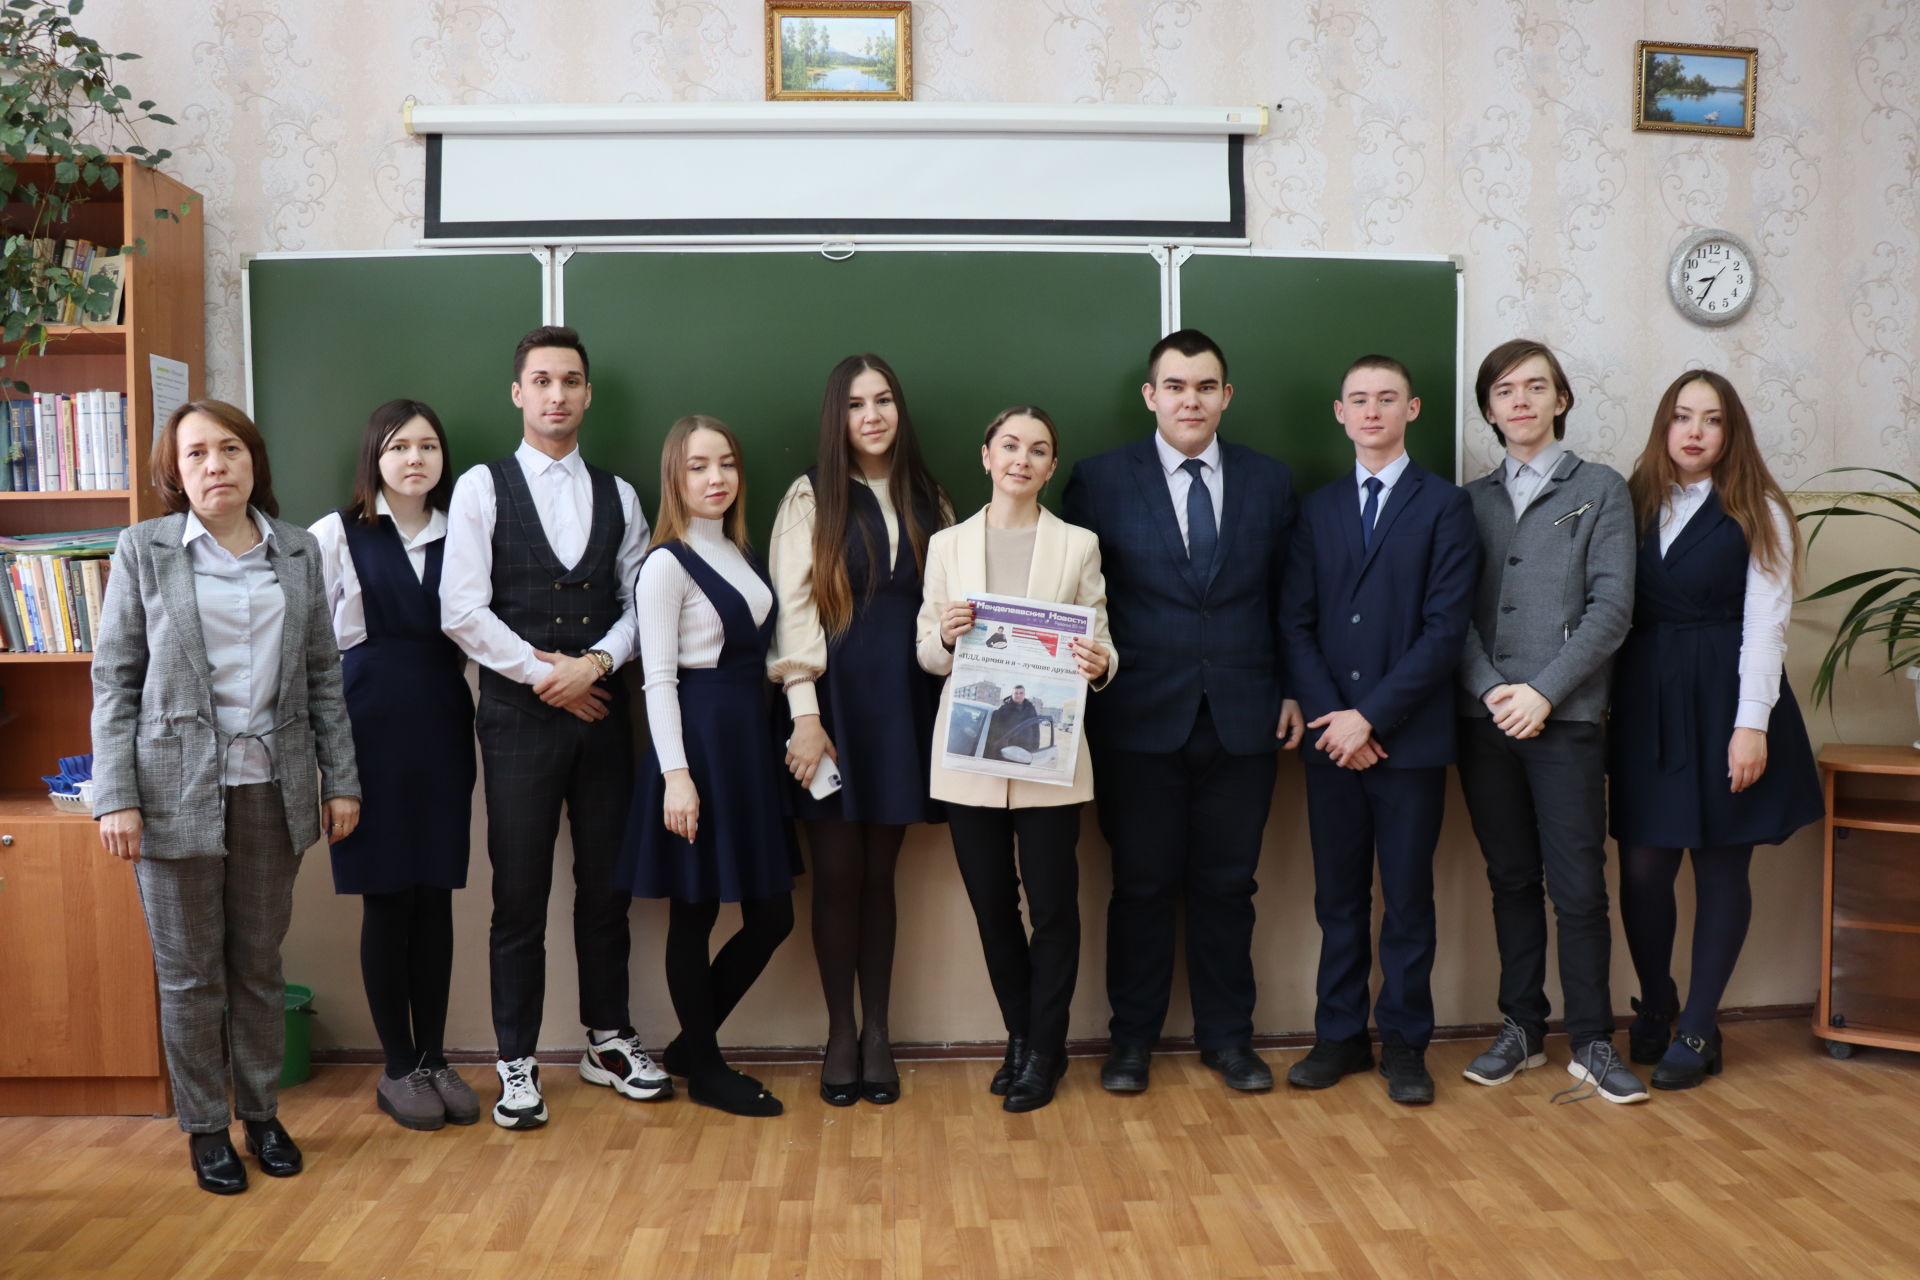 Руководитель ИЦ «Менделеевск» Джулия Искандарова провела для учеников Менделеевска парламентский урок